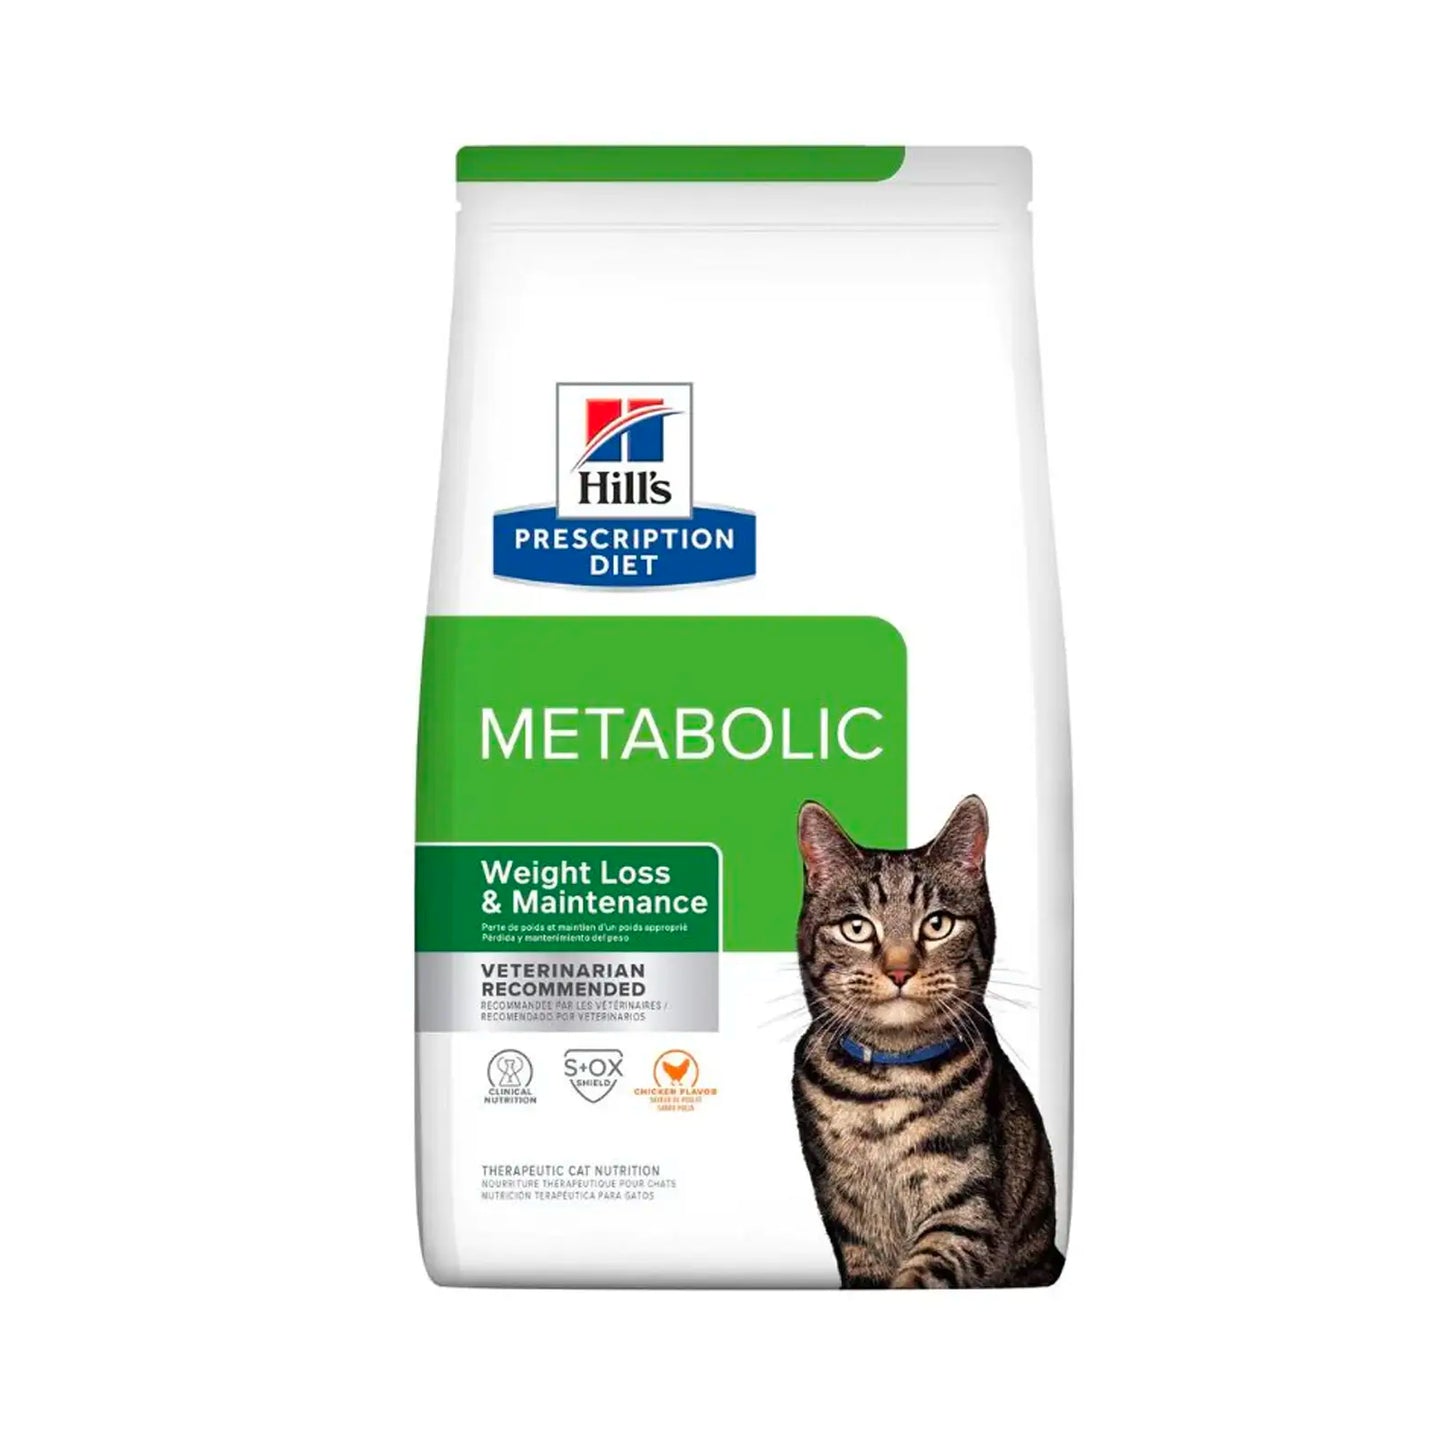 Hill's Prescription Diet - Feline Metabolic Weight Management